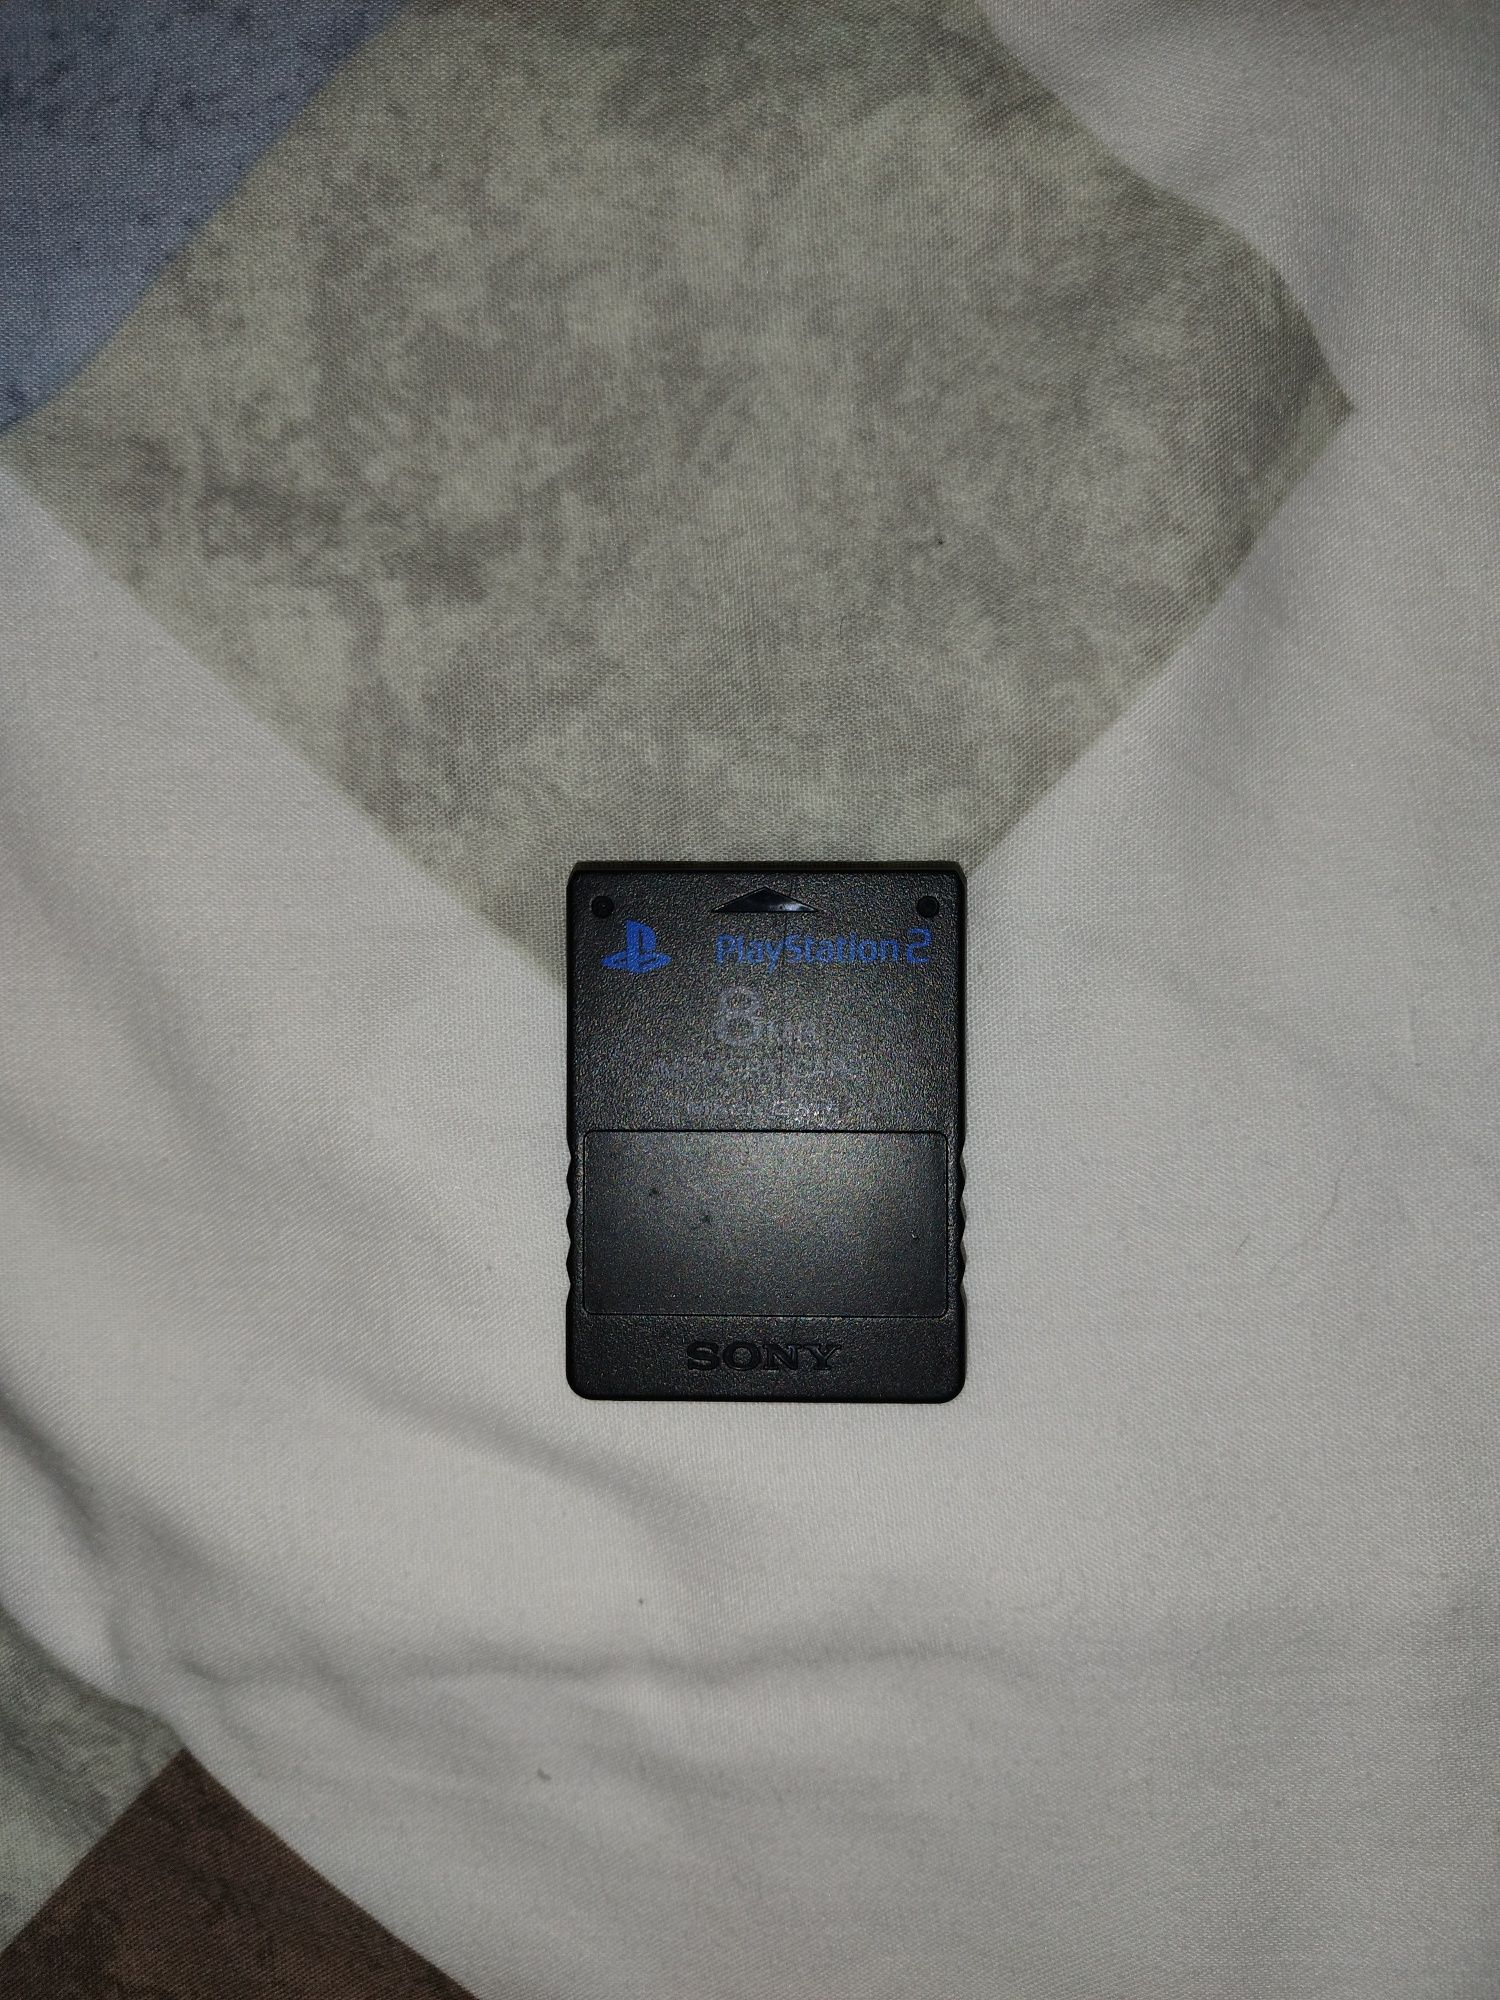 Cartão de memória da PS2